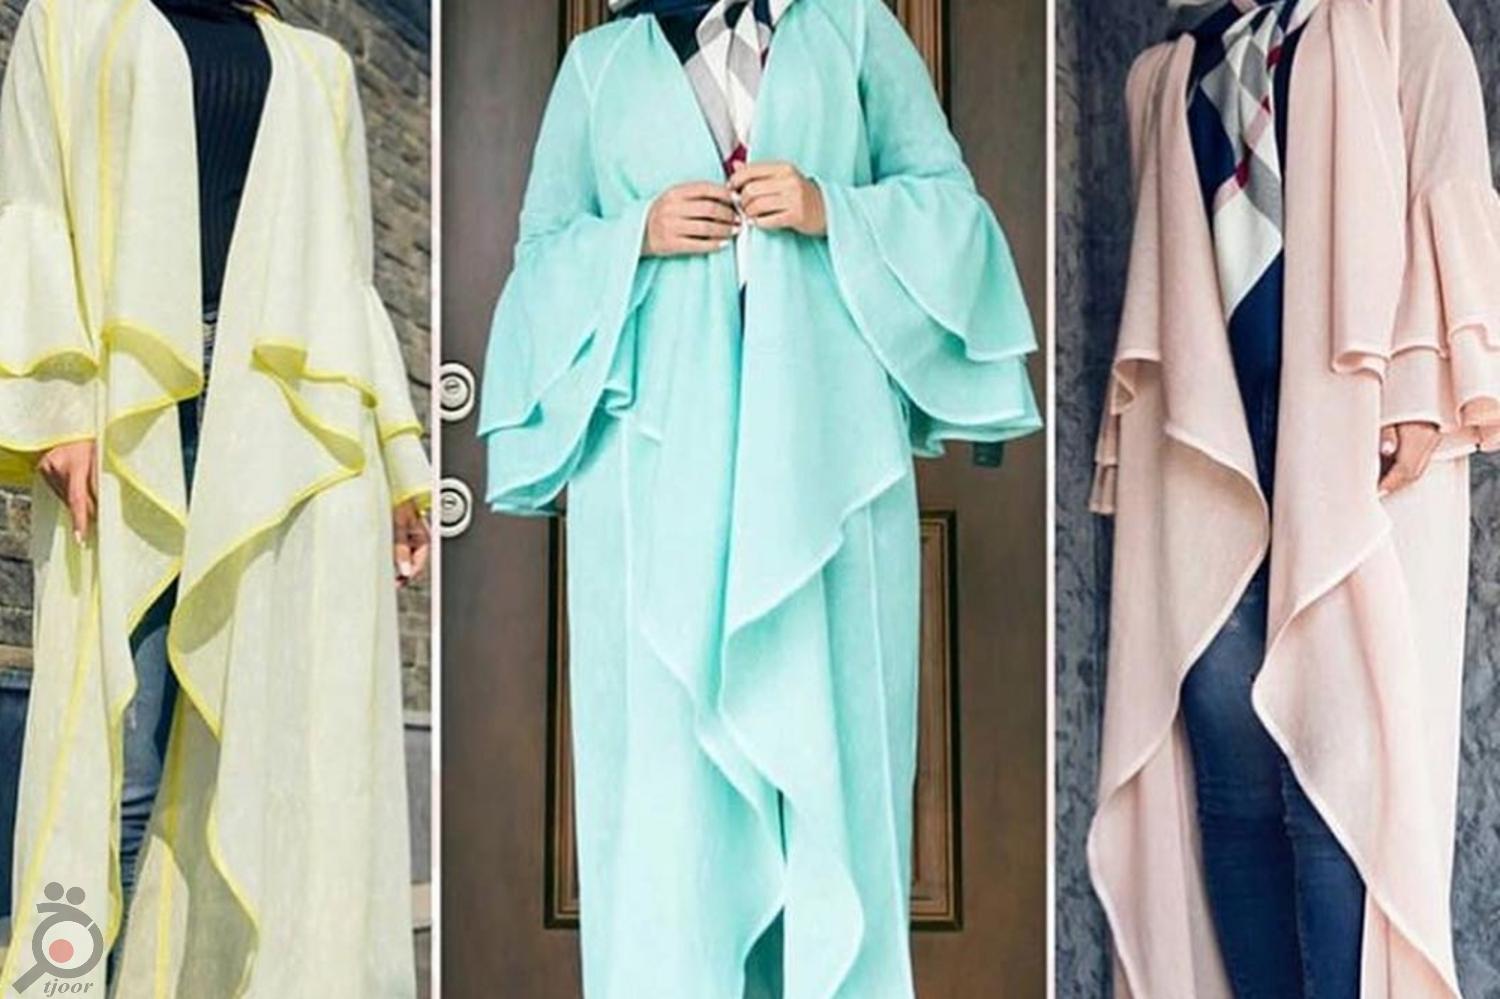 فروش ویژه پایان سال پوشاک زنانه ( مانتو ، بوت ، کیف و کفش )